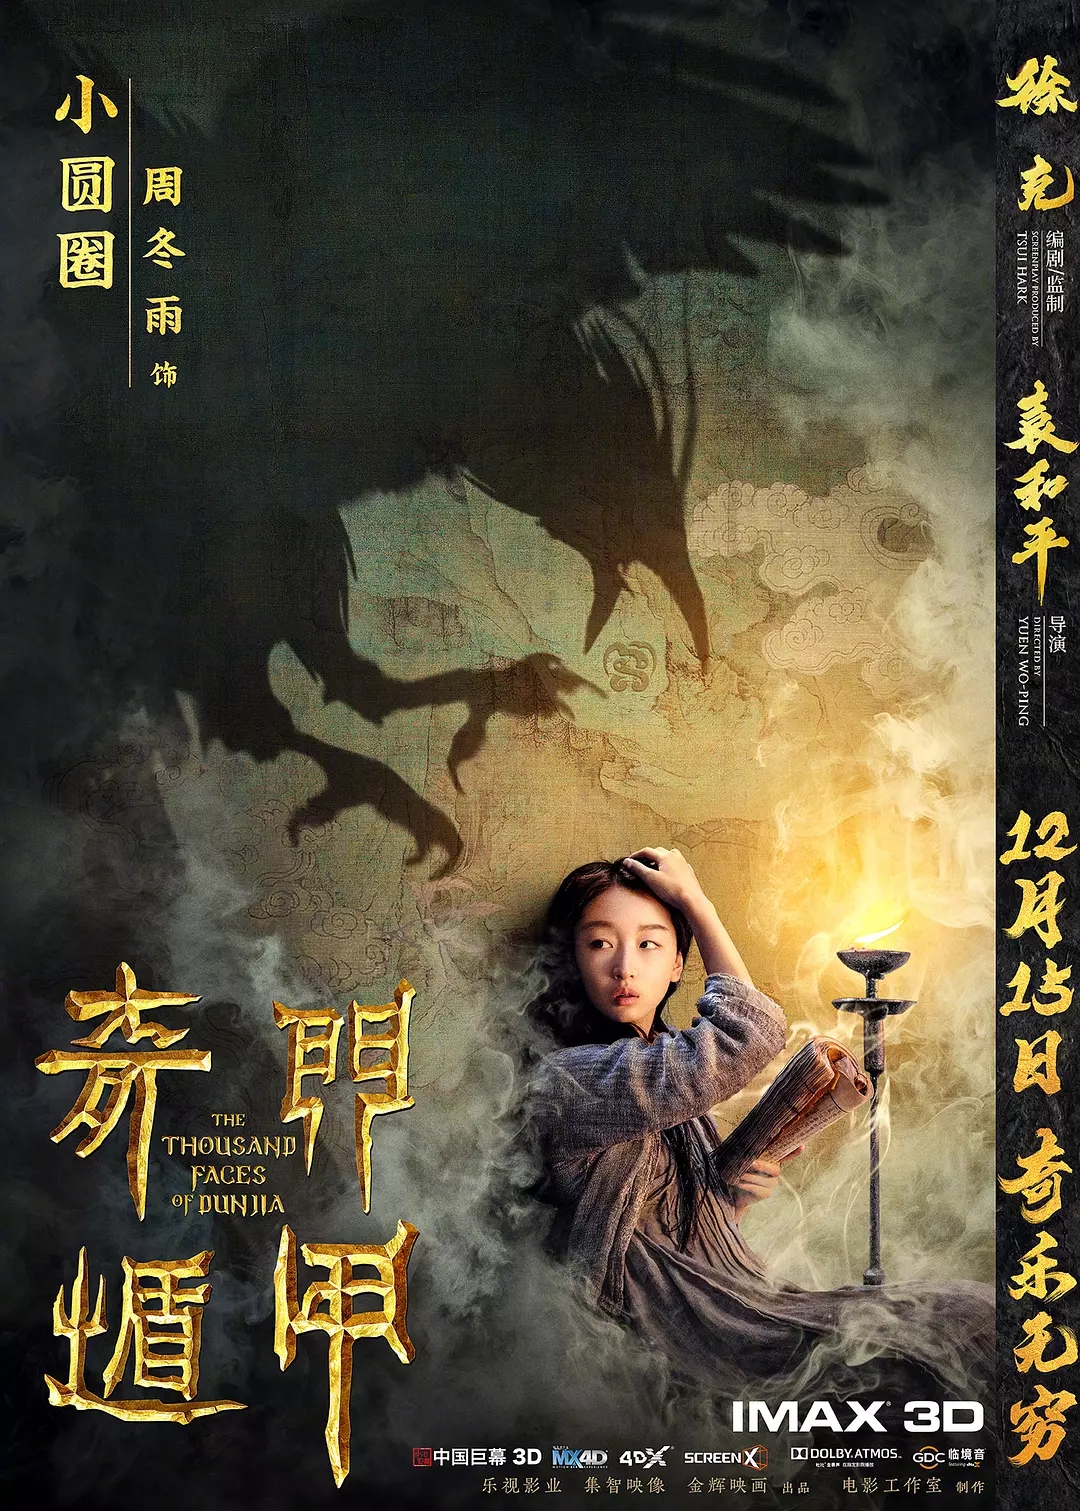 《奇门遁甲》(2017年12月14日)由徐克监制,袁和平执导,大鹏,倪妮